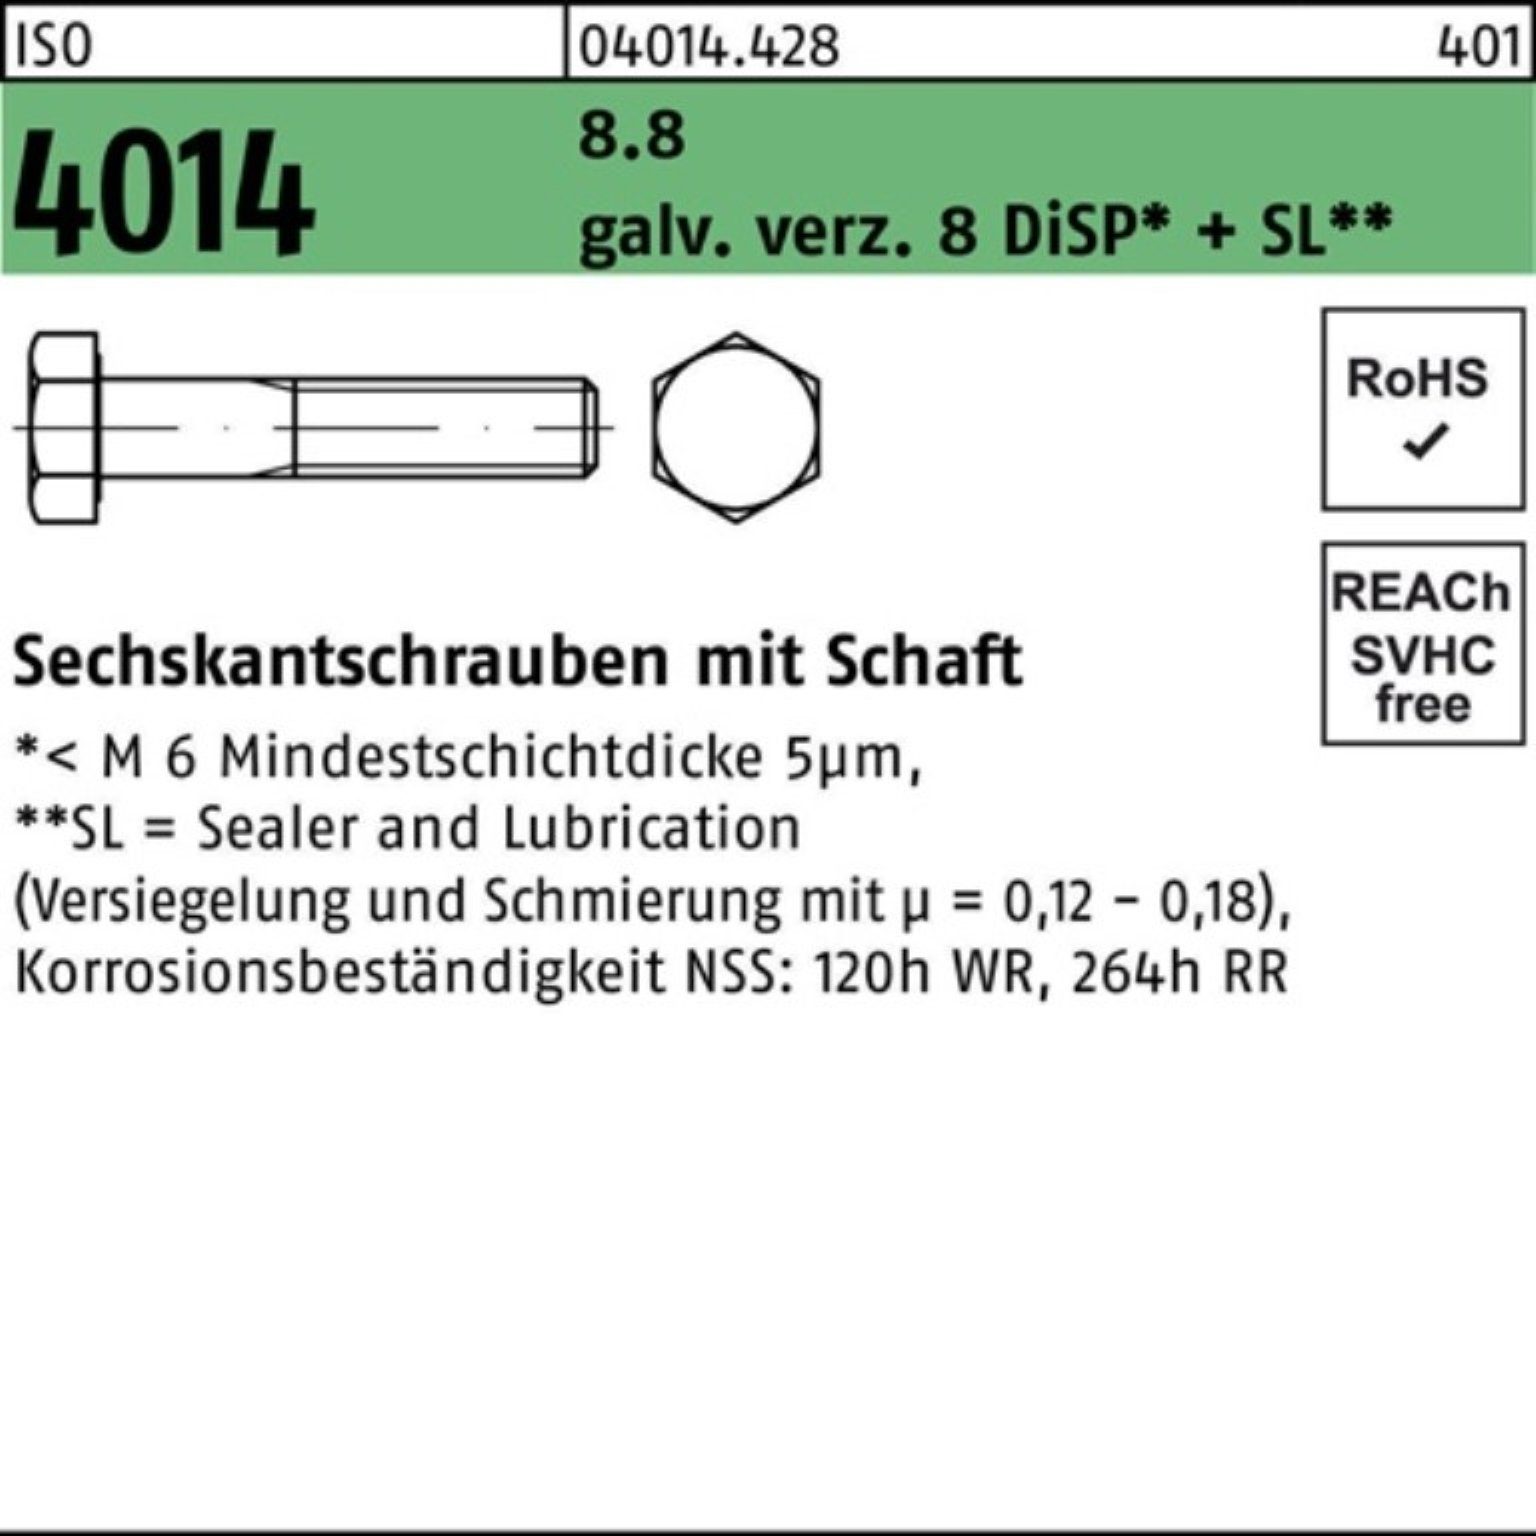 Bufab Sechskantschraube 100er Pack Sechskantschraube ISO 4014 Schaft M20x100 8.8 galv.verz. 8